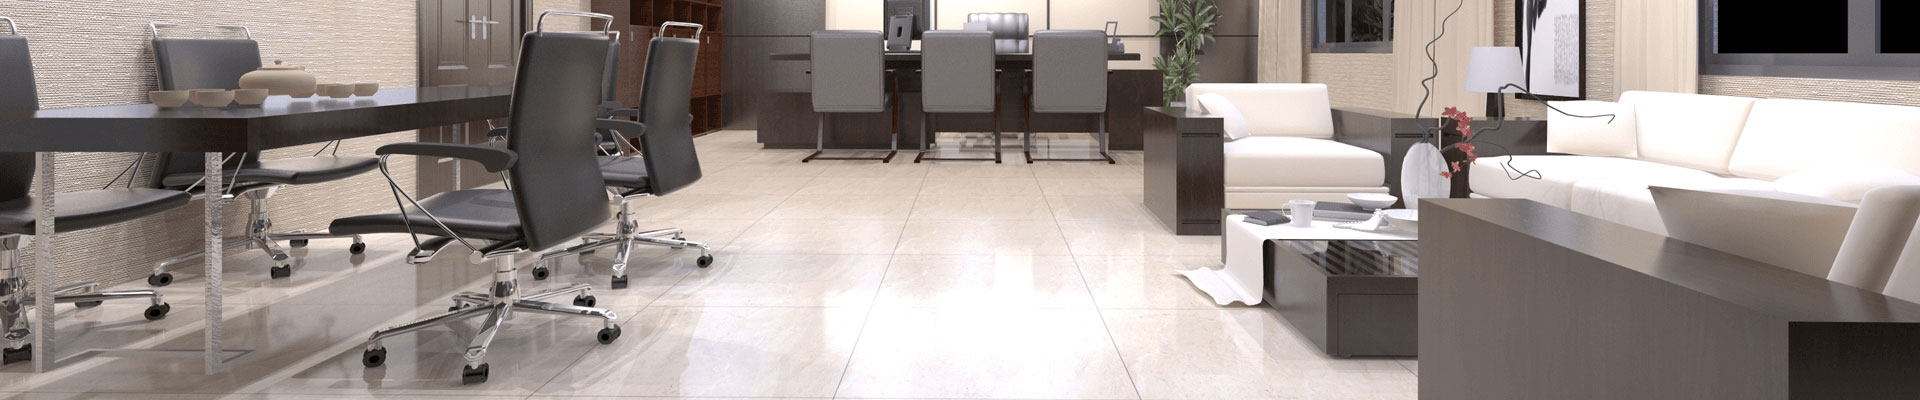 Office Floor Tiles Wholesale Exterior Tiles Manufacturer & Vendor